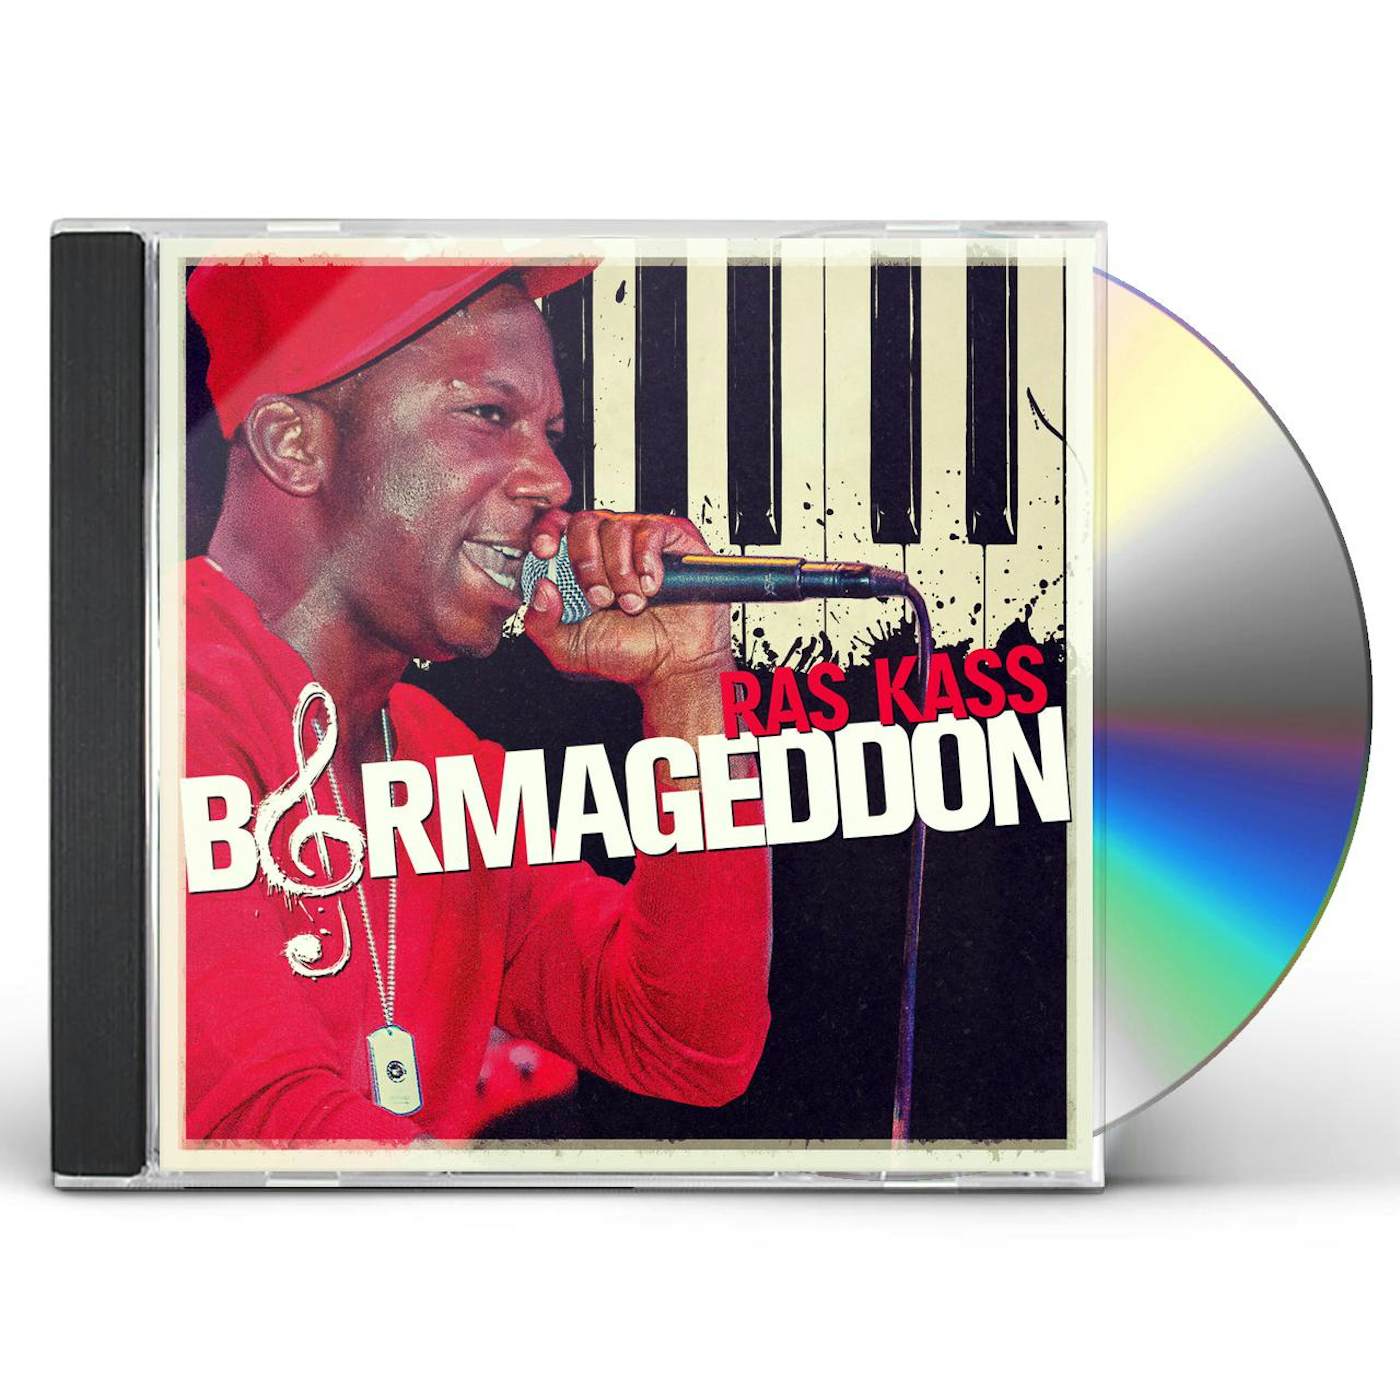 Rass Kass BARMAGEDDON 2.0 CD